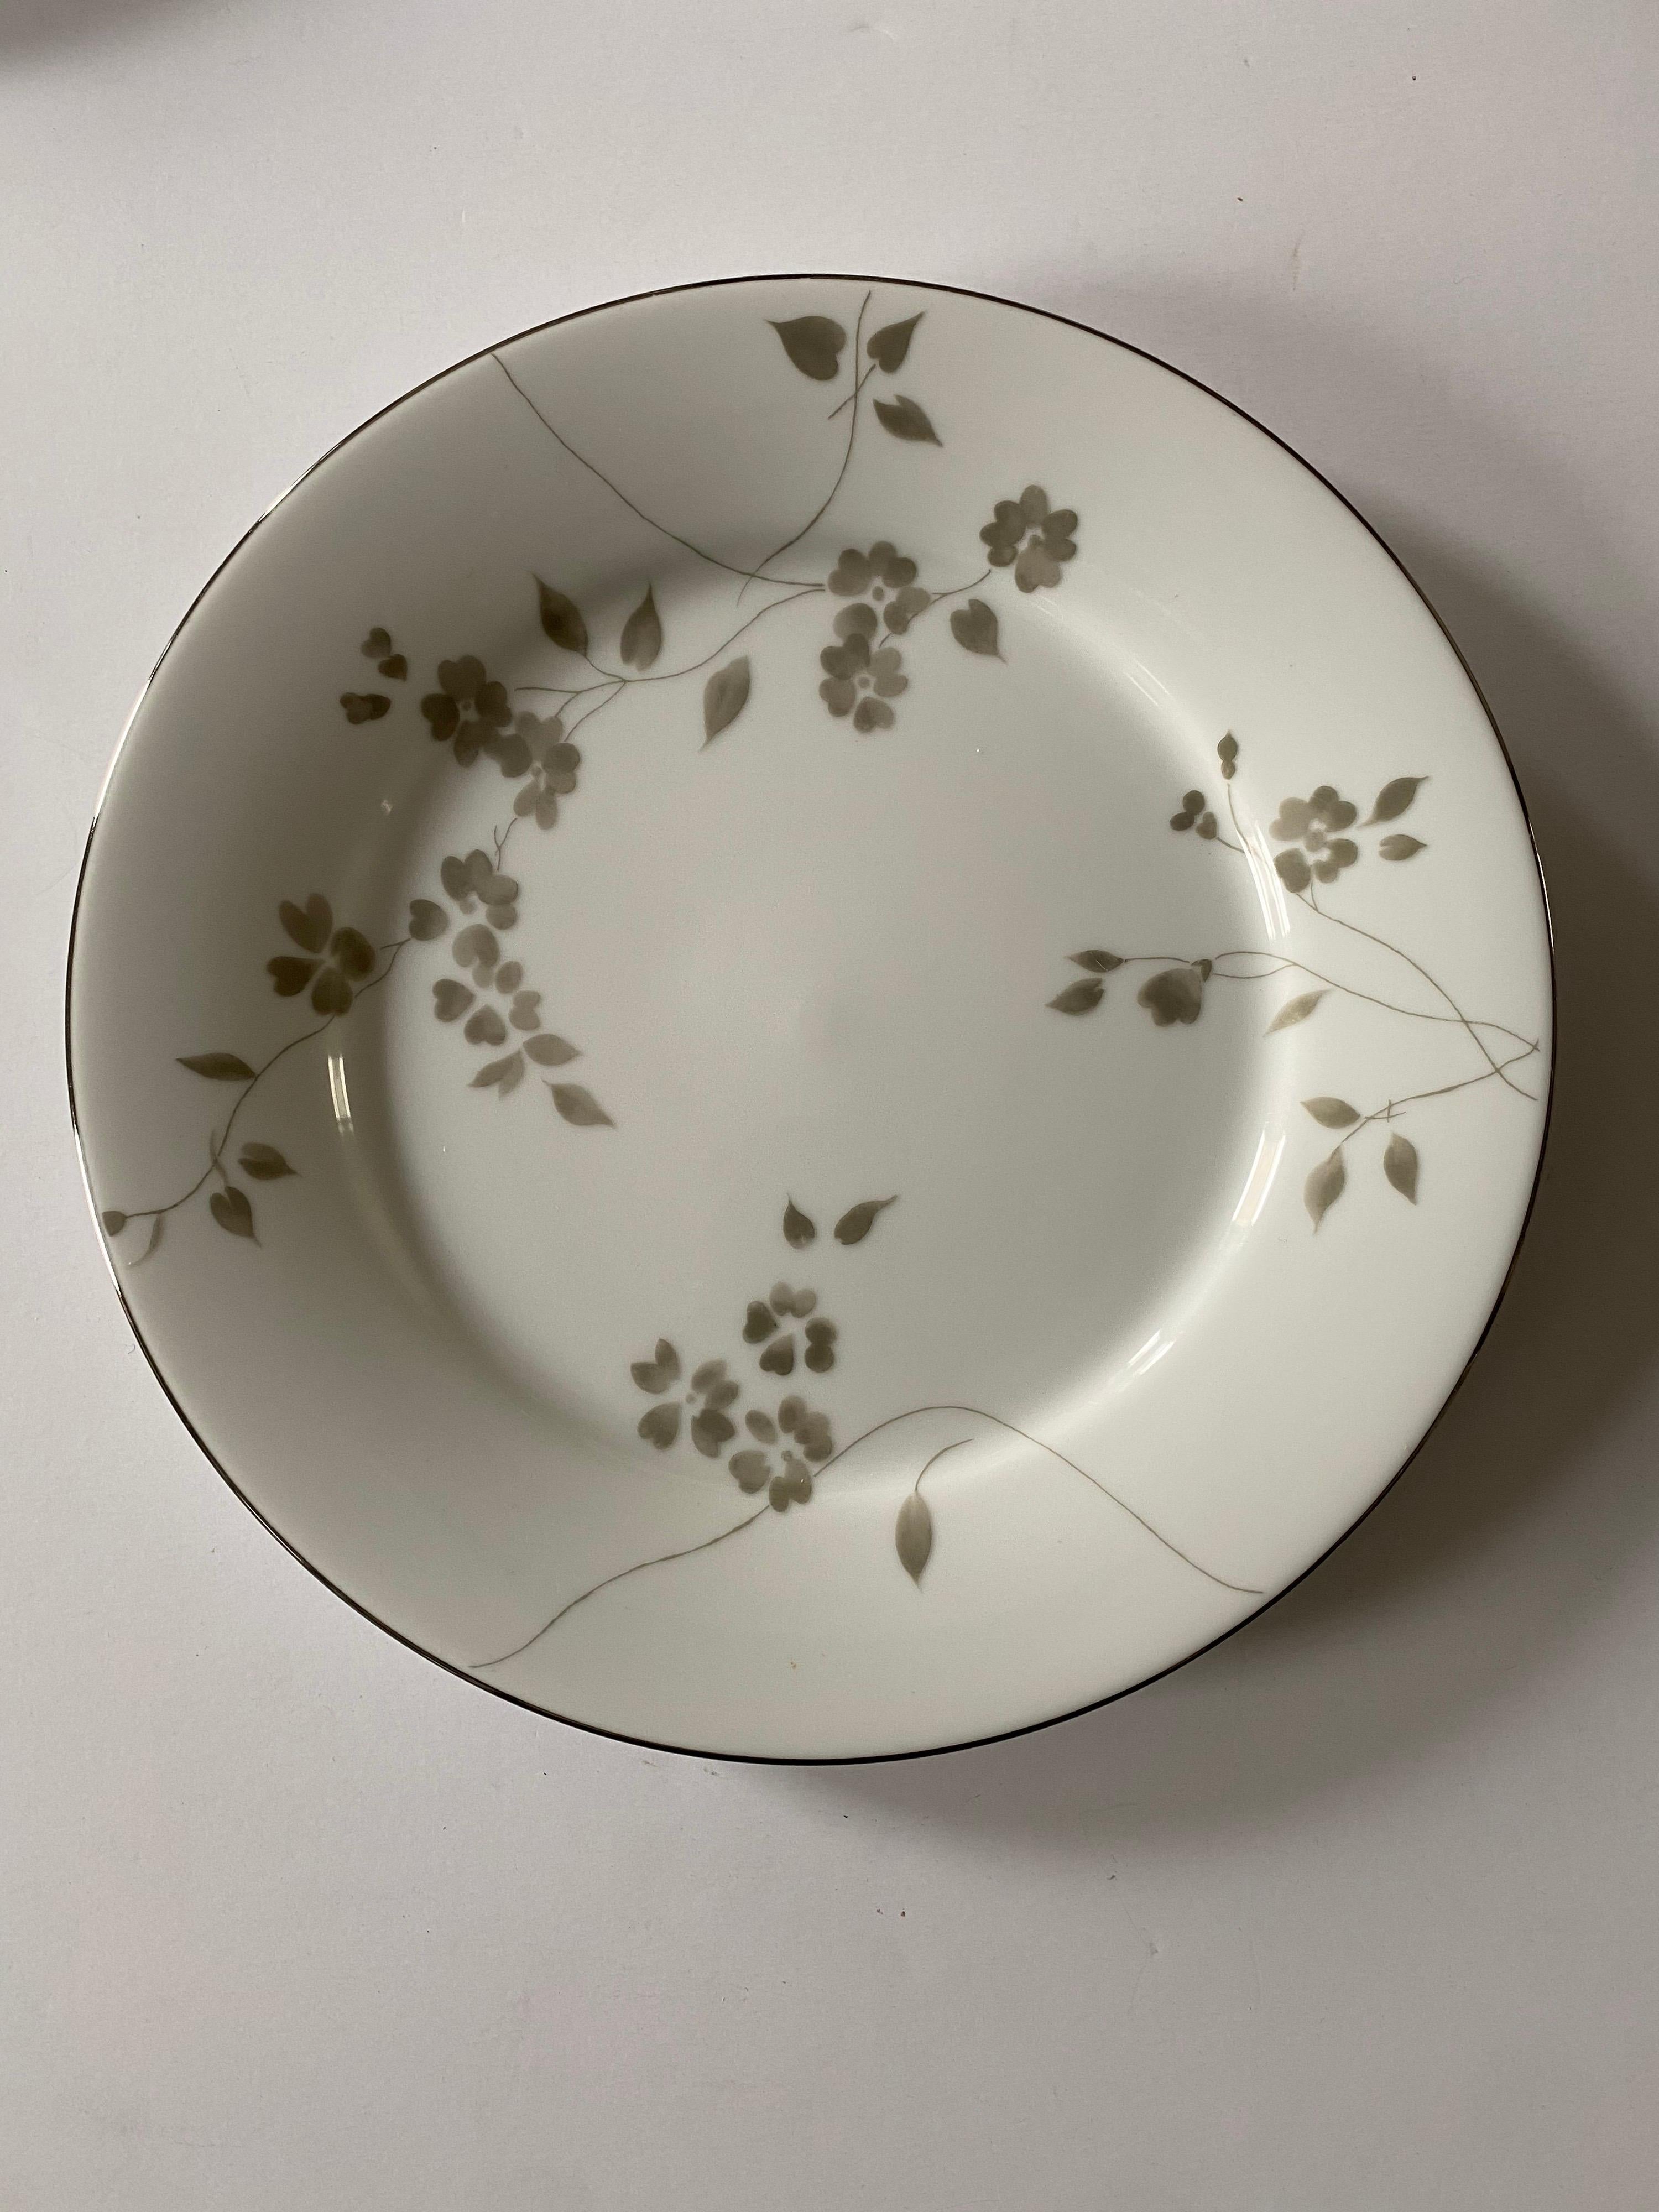 Ensemble de 12 pièces de vaisselle Ralph Lauren Home au motif floral Sophia, un motif romantique de fleurs éparpillées gris/vert pâle sur fond blanc, complété par une bordure platine. 

Comprend les 12 (douze) pièces suivantes :
4 Assiettes plates,